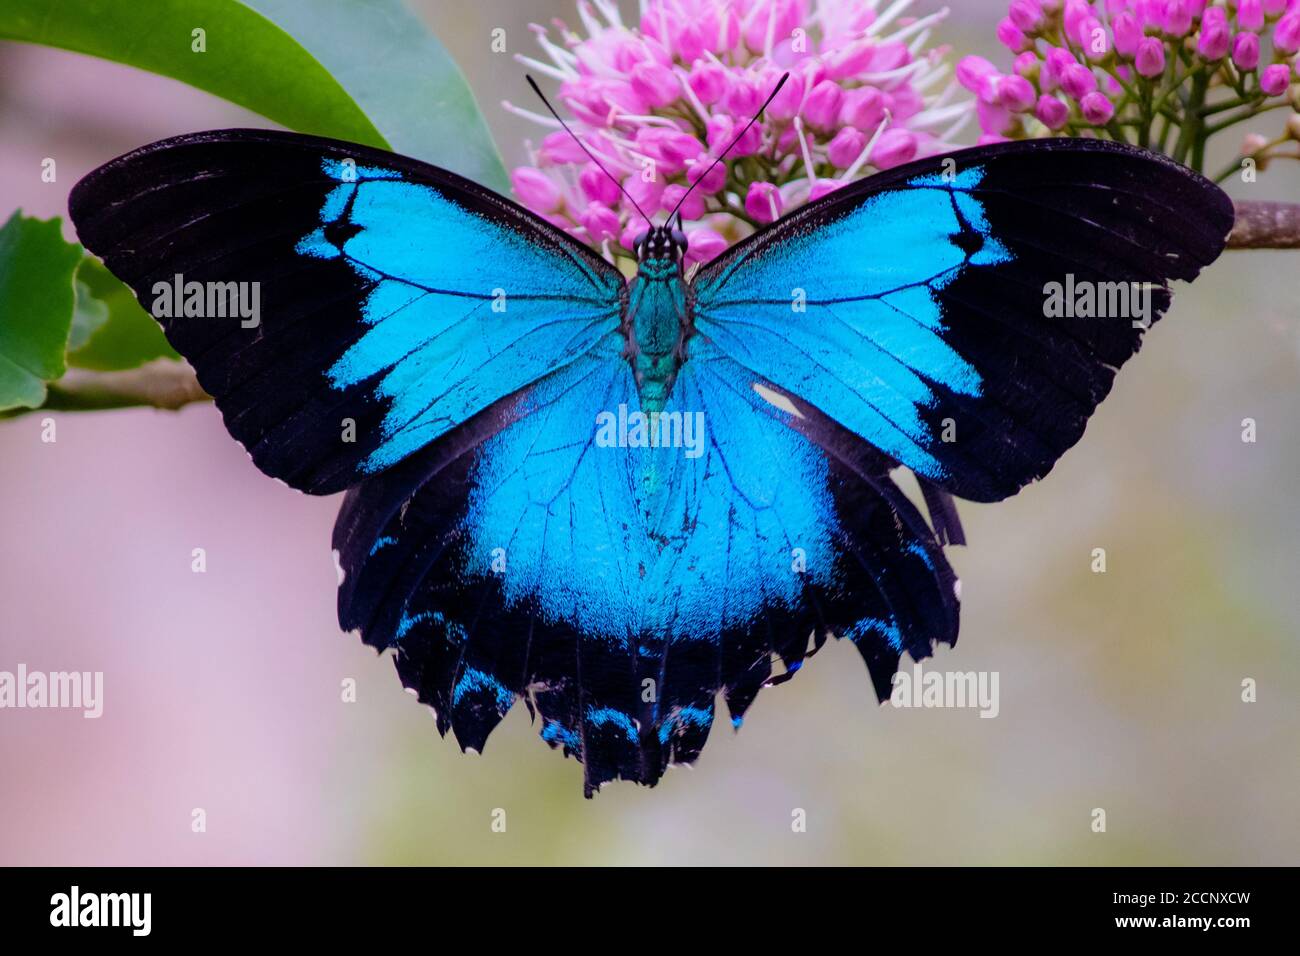 Lebender blauer Ulysses-Schmetterling (Papilio ulysses) öffnet Flügel in der Natur, bestäubt rosa Blüten. Ikonisches Symbol. Yungaburra, Queensland, Australien Stockfoto